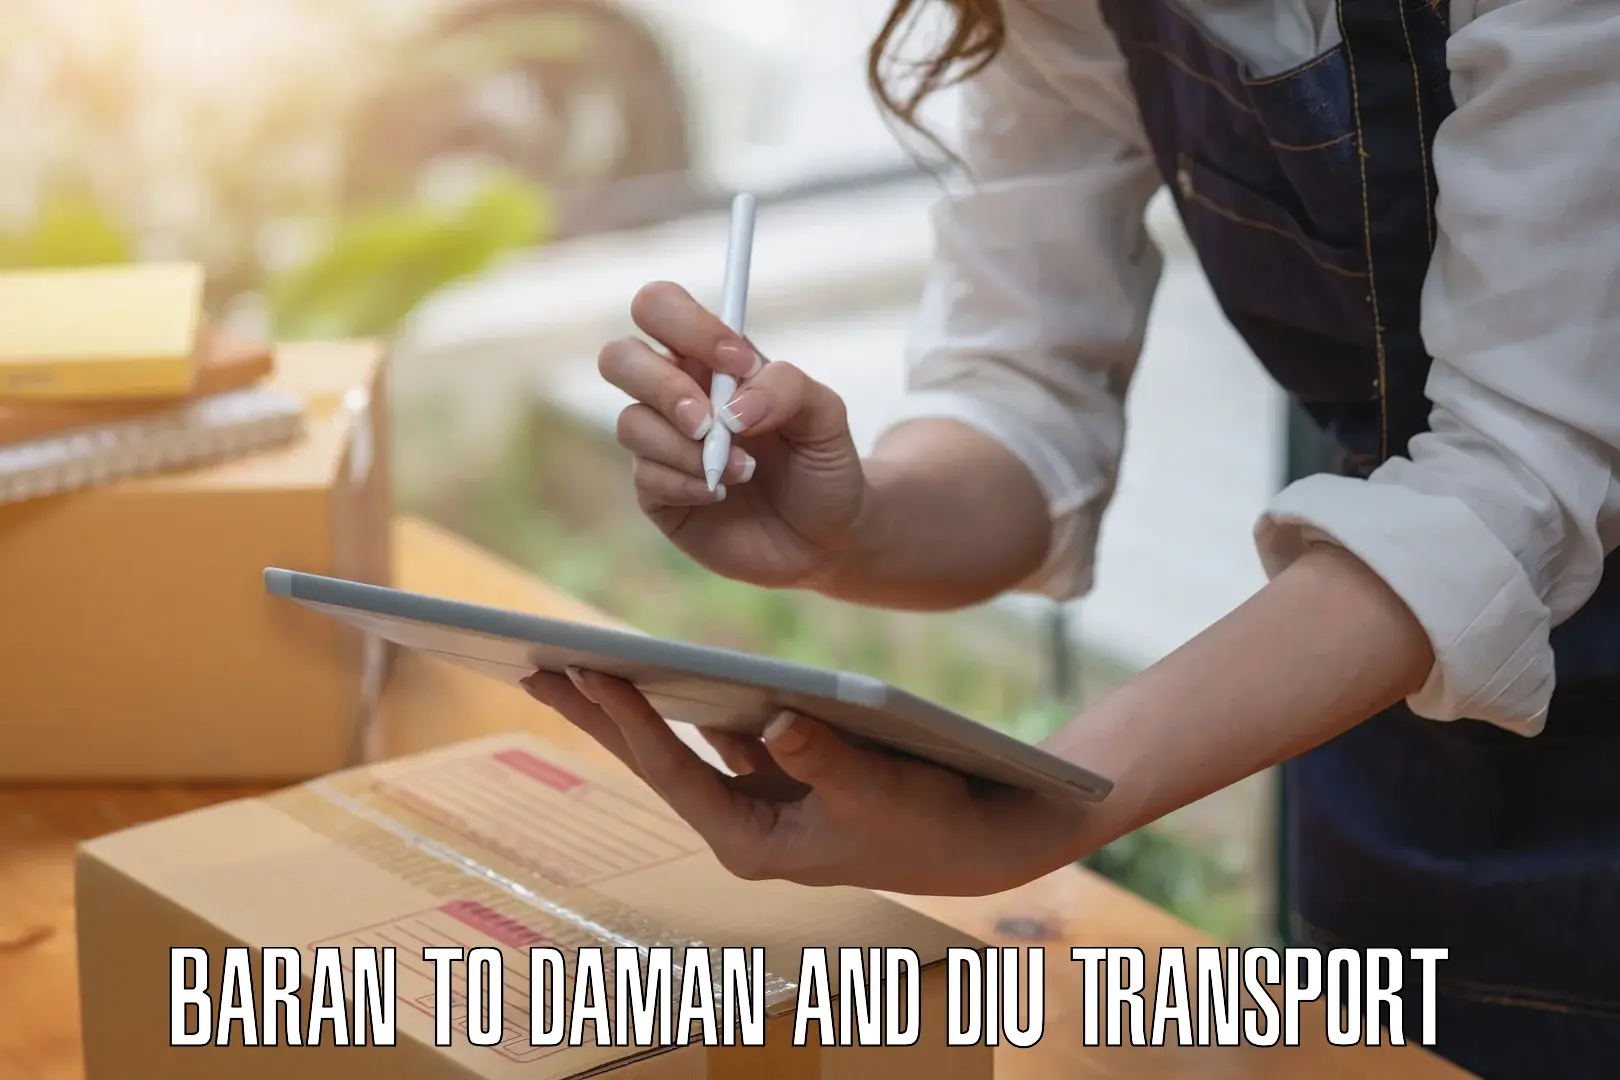 Furniture transport service Baran to Daman and Diu